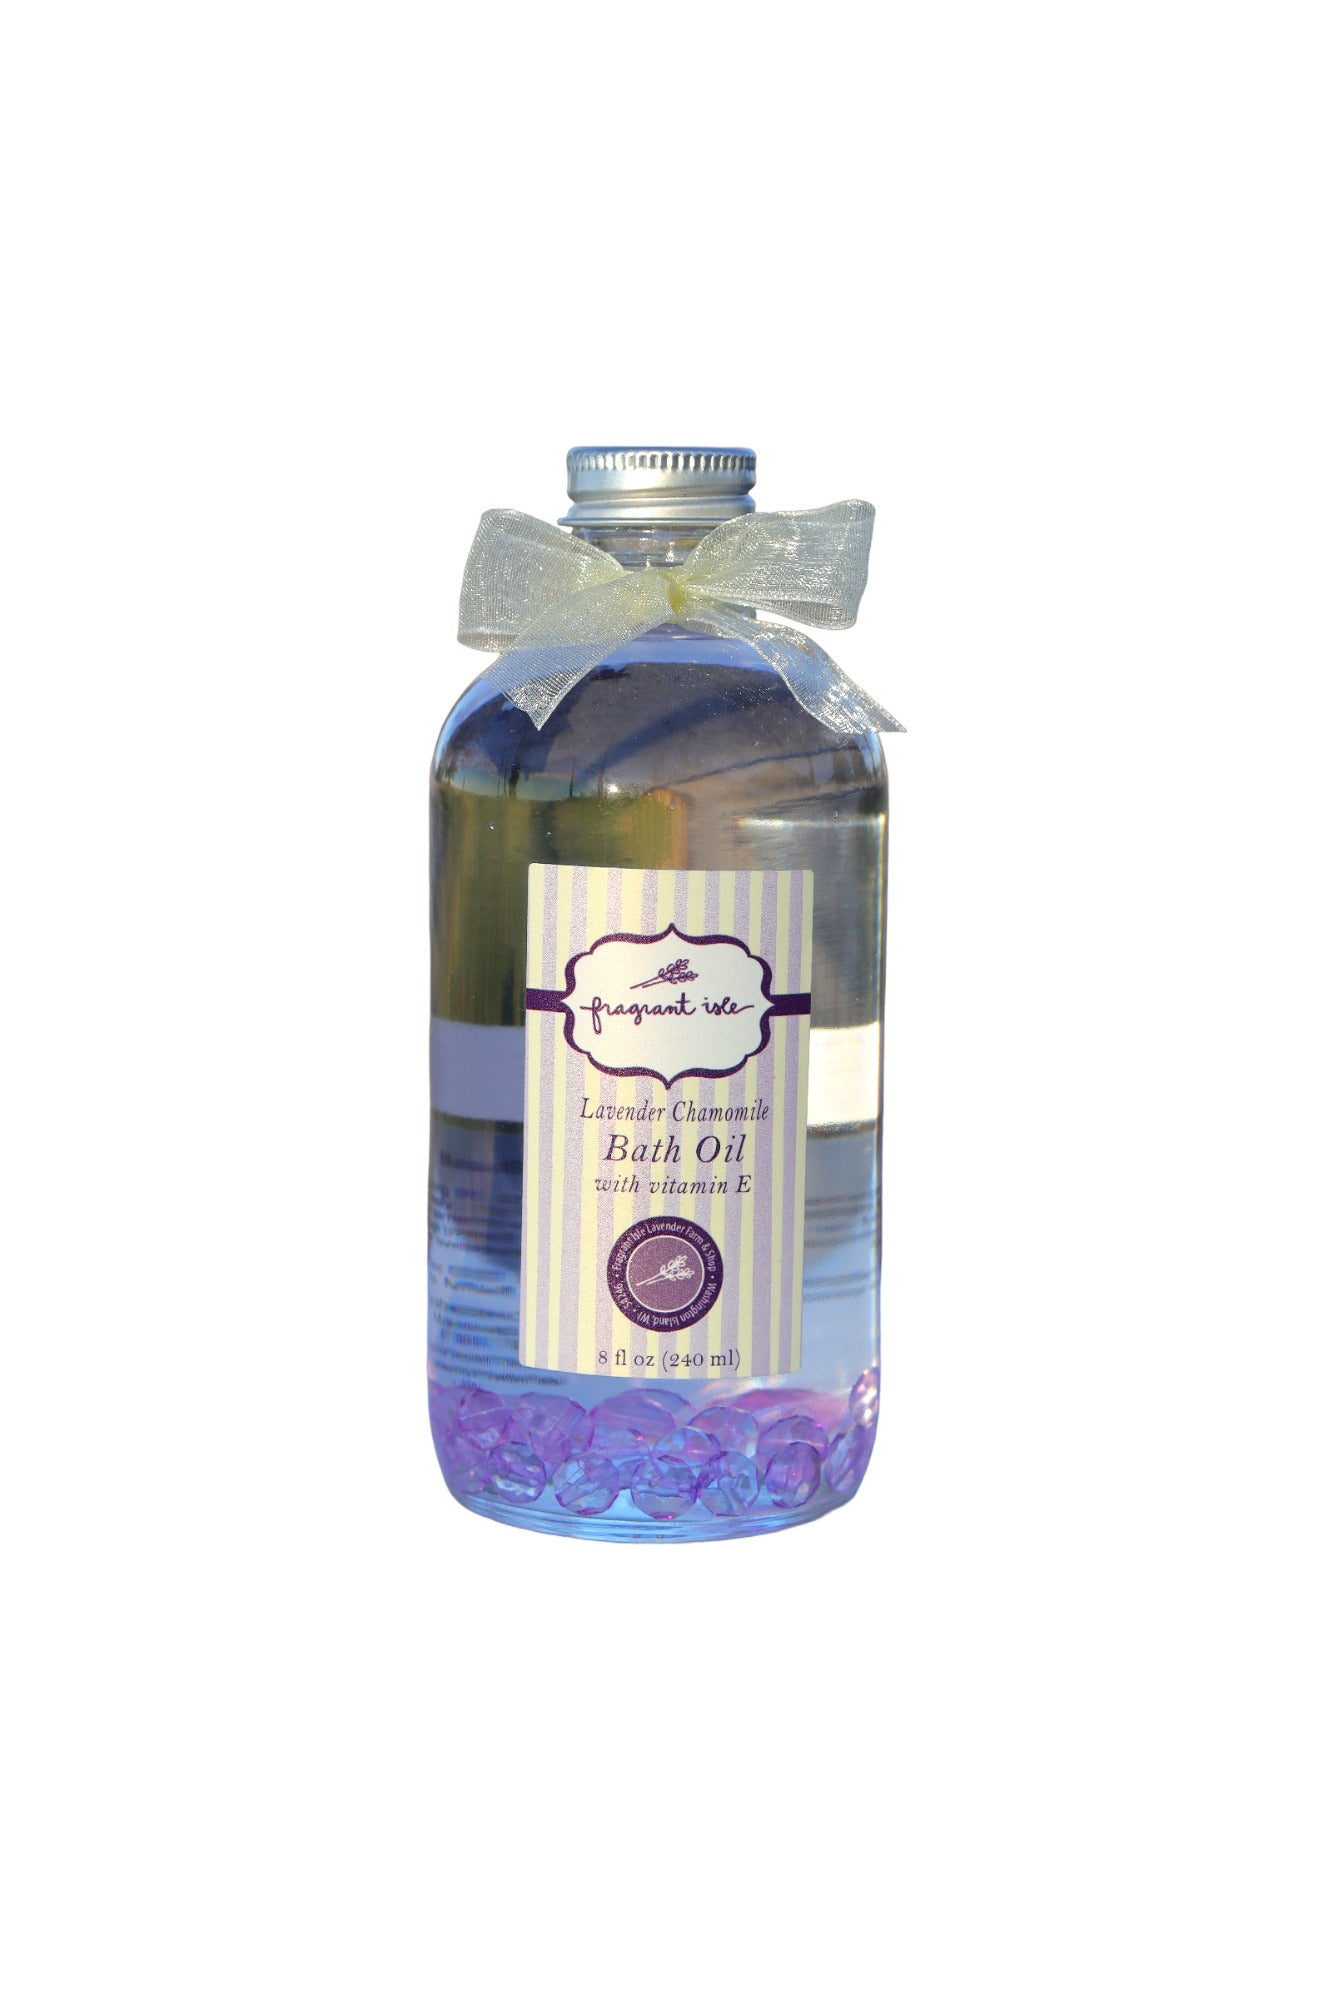 Lavender Chamomile Bath Oil - 8 oz